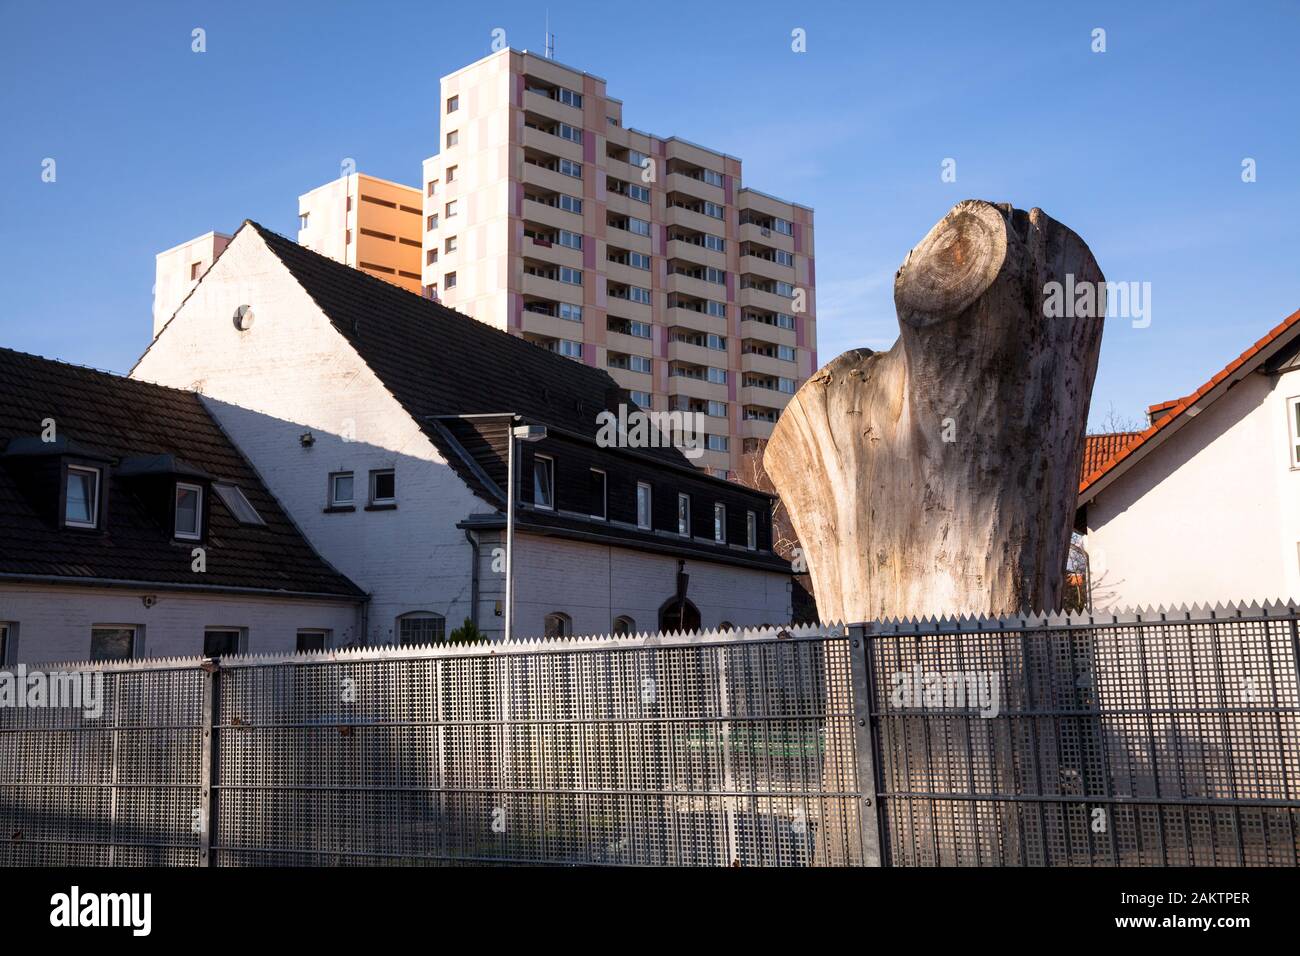 Resti di un grande albero nel distretto di Niehl, Colonia, Germania. Resto eines grossen Baums im Stadtteil Niehl, Koeln, Deutschland. Foto Stock